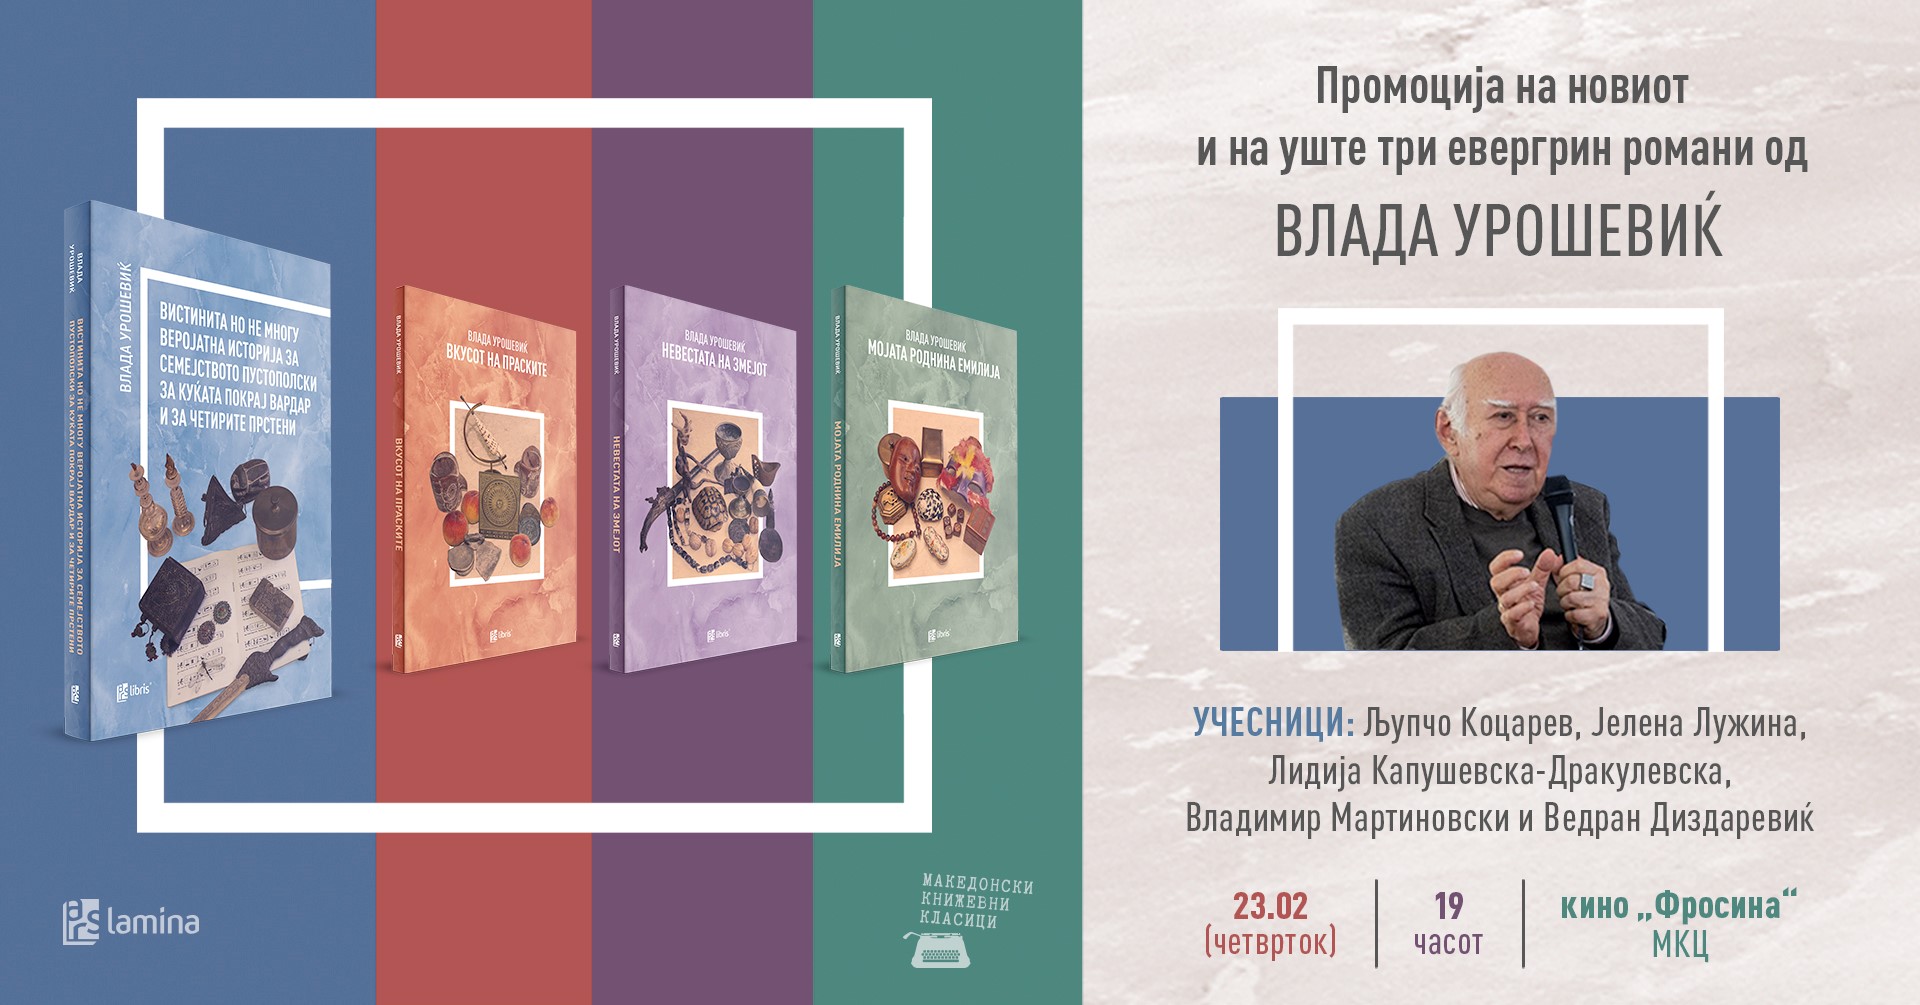 Промоција на новиот и на 3 евергрин романи од Влада Урошевиќ во МКЦ